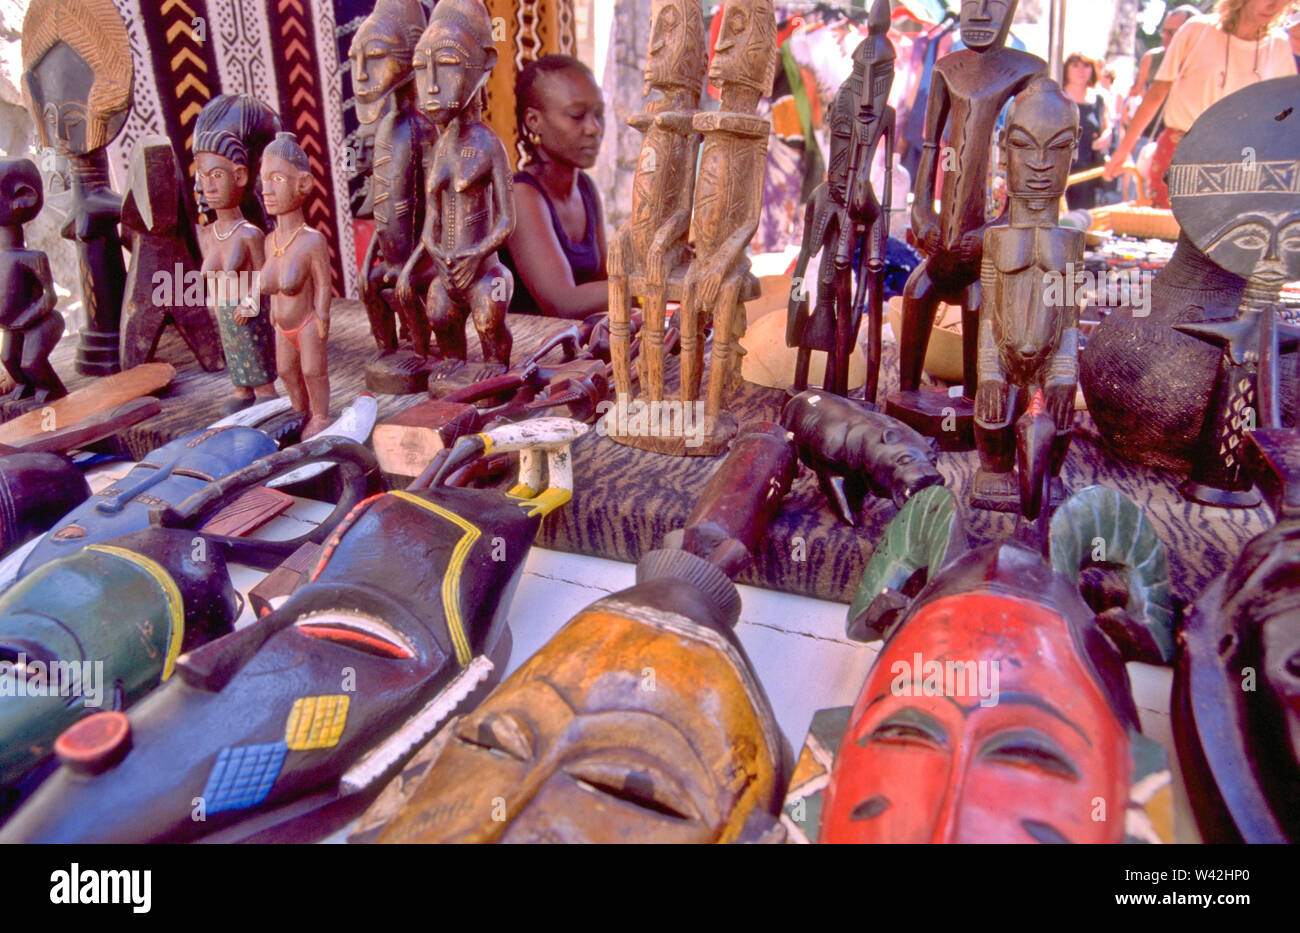 L'arte africana è stata un punto di riferimento nei mercati delle pulci in Provenza. Maschere e sculture sono state una tariffa comune. Foto Stock